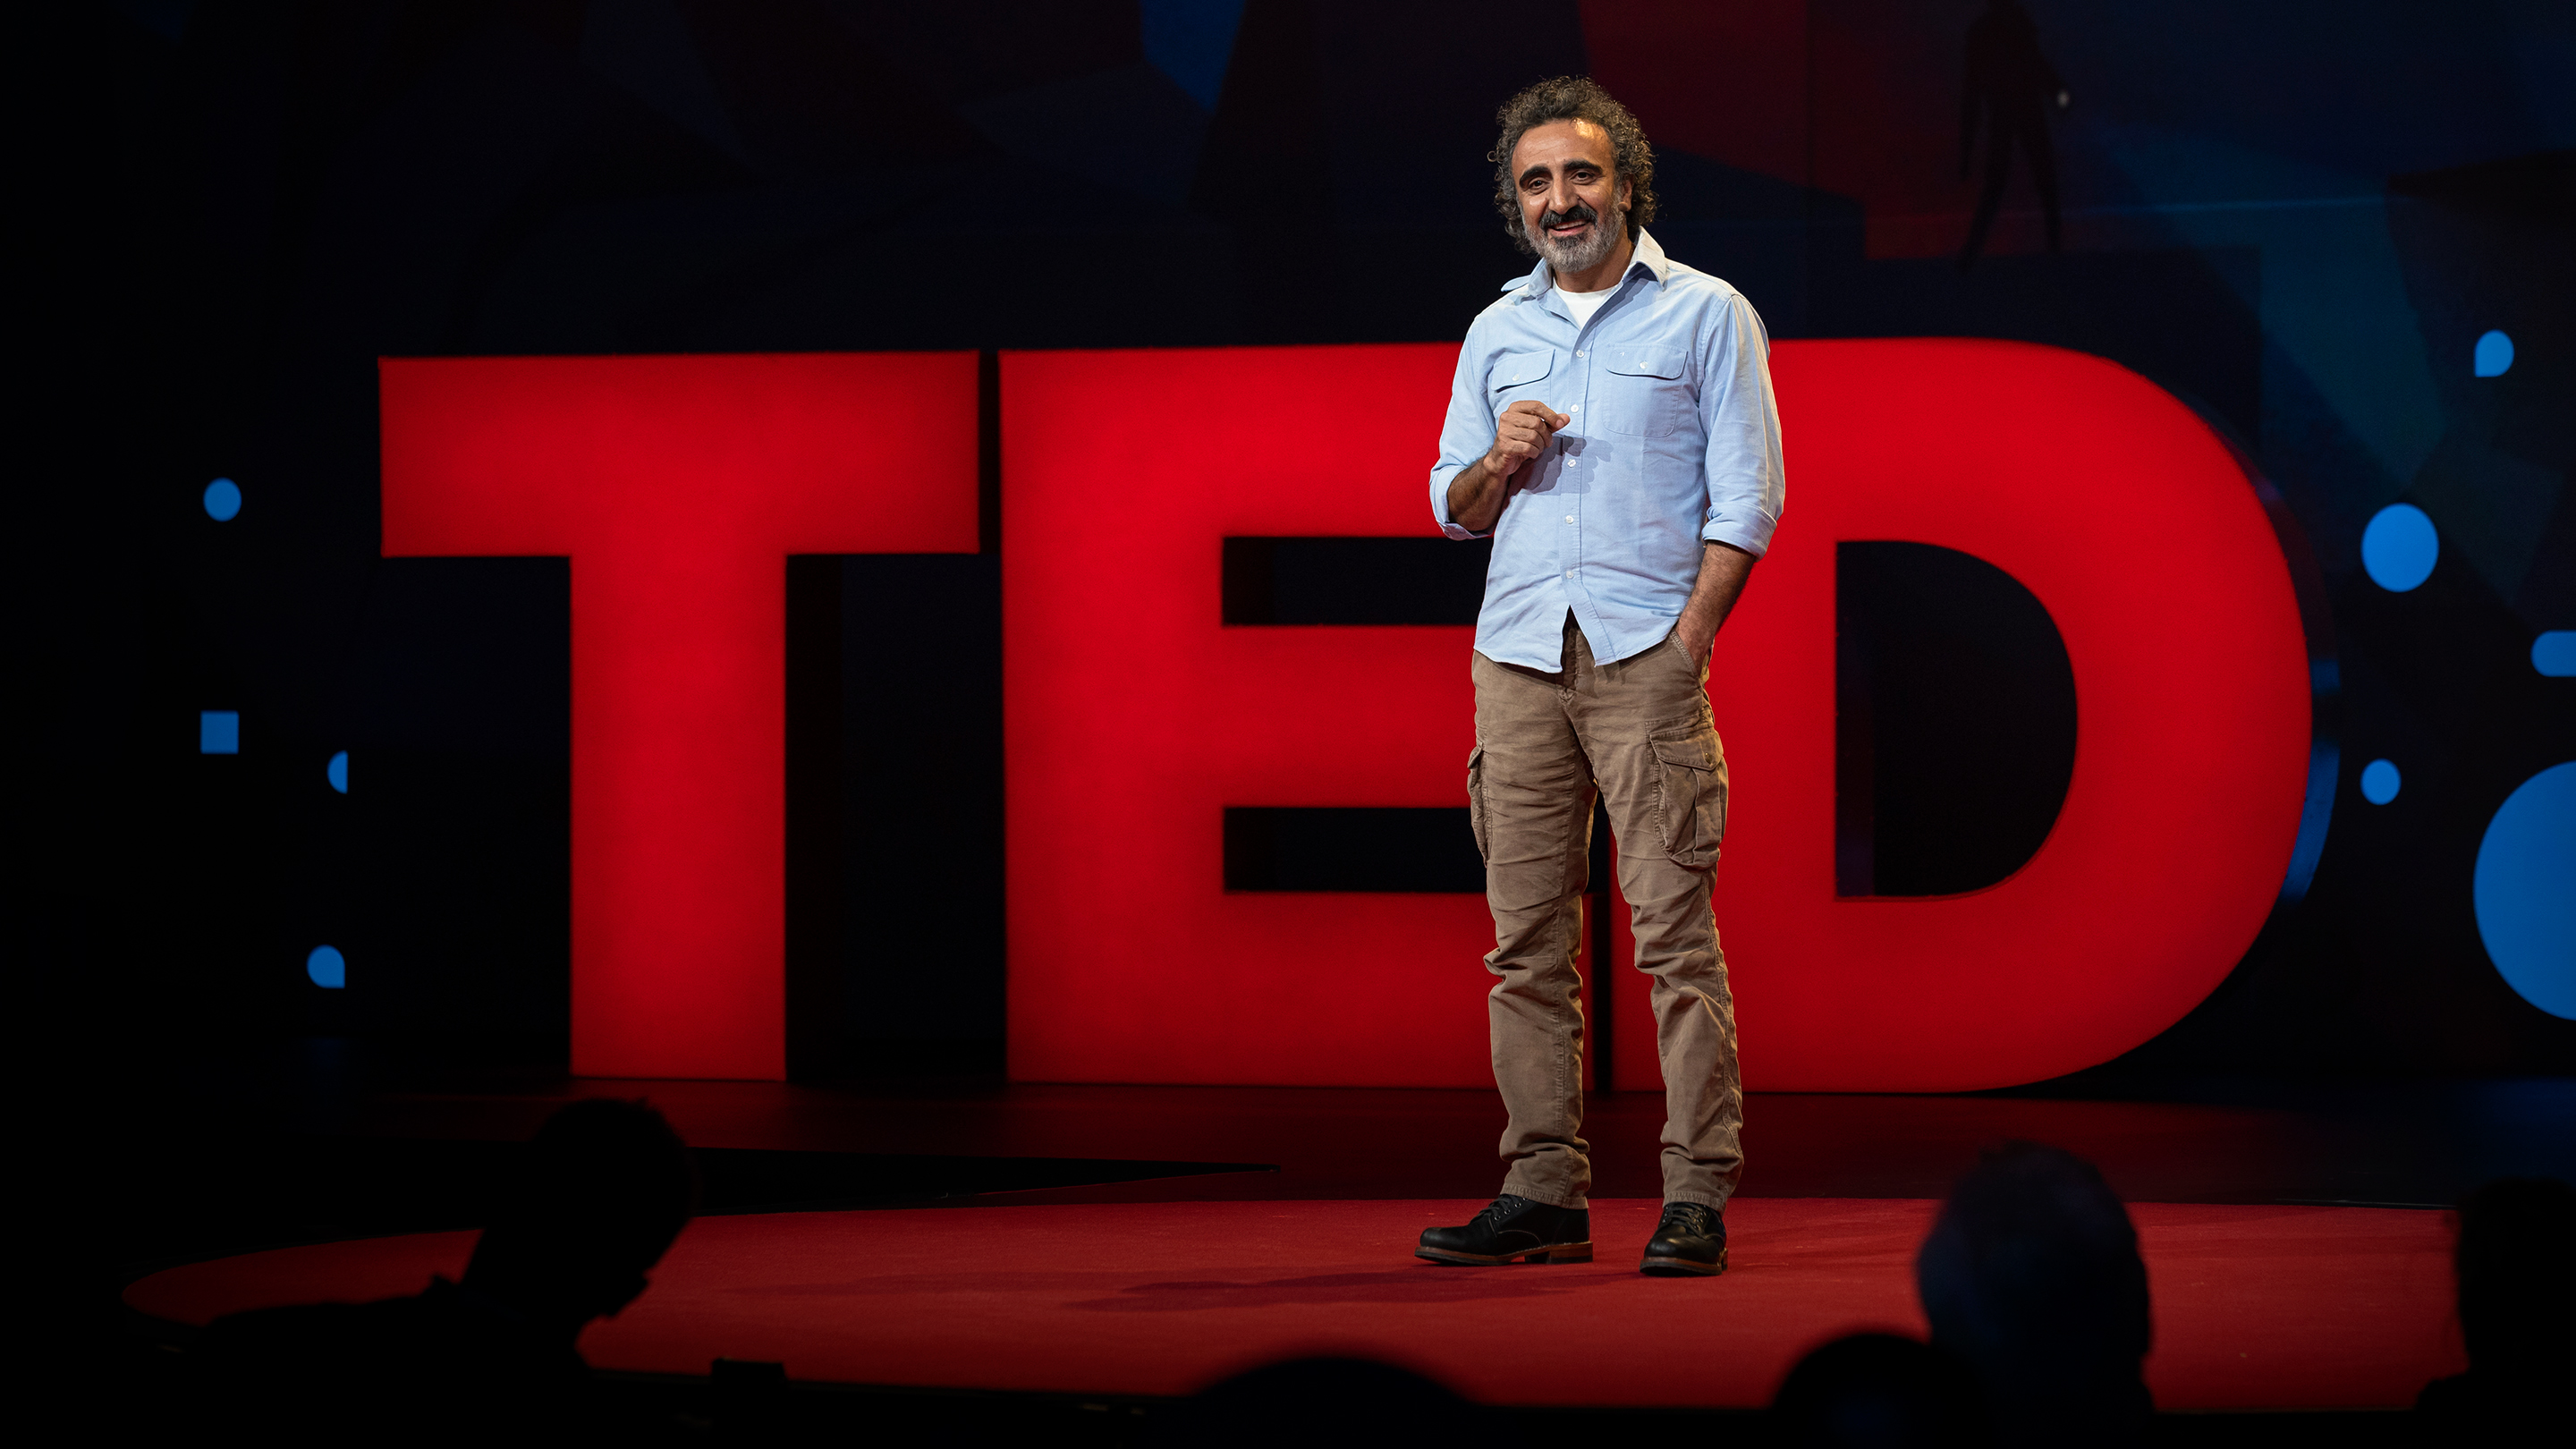 Tedx talk là gì? Liệu bạn đã biết hết về Ted talk hay chưa? - Ảnh 1